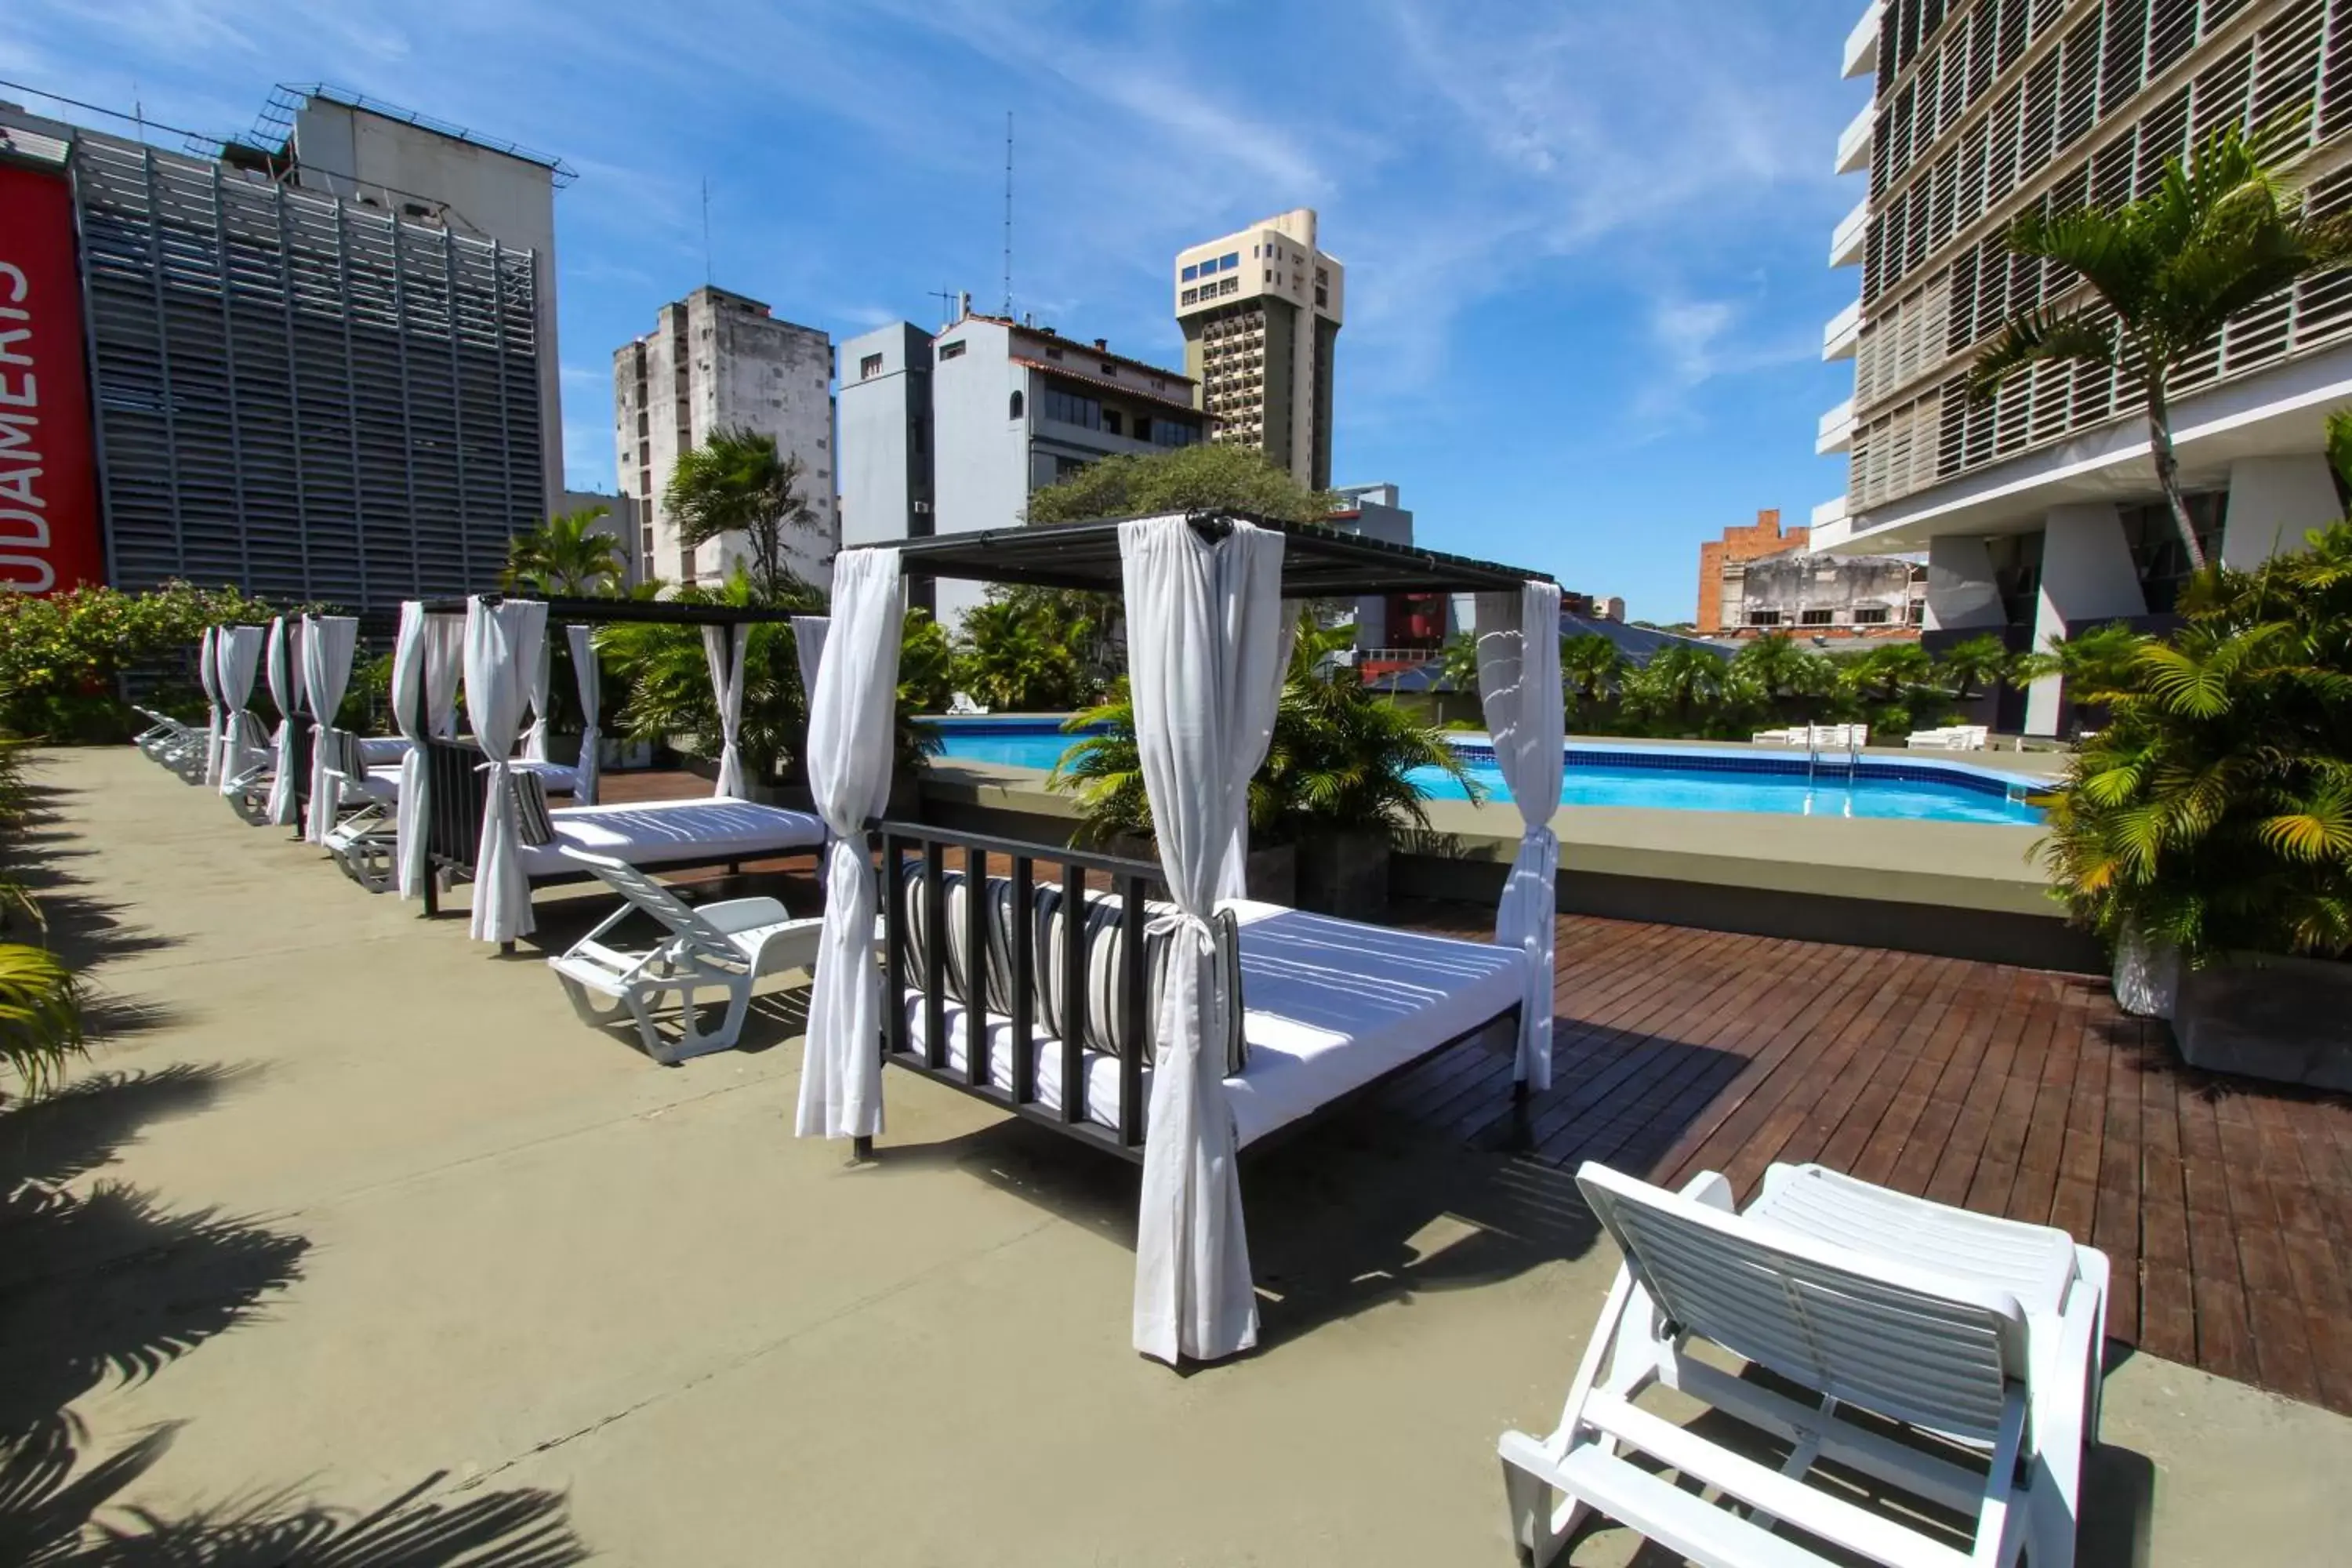 Balcony/Terrace, Swimming Pool in Hotel Guarani Asuncion